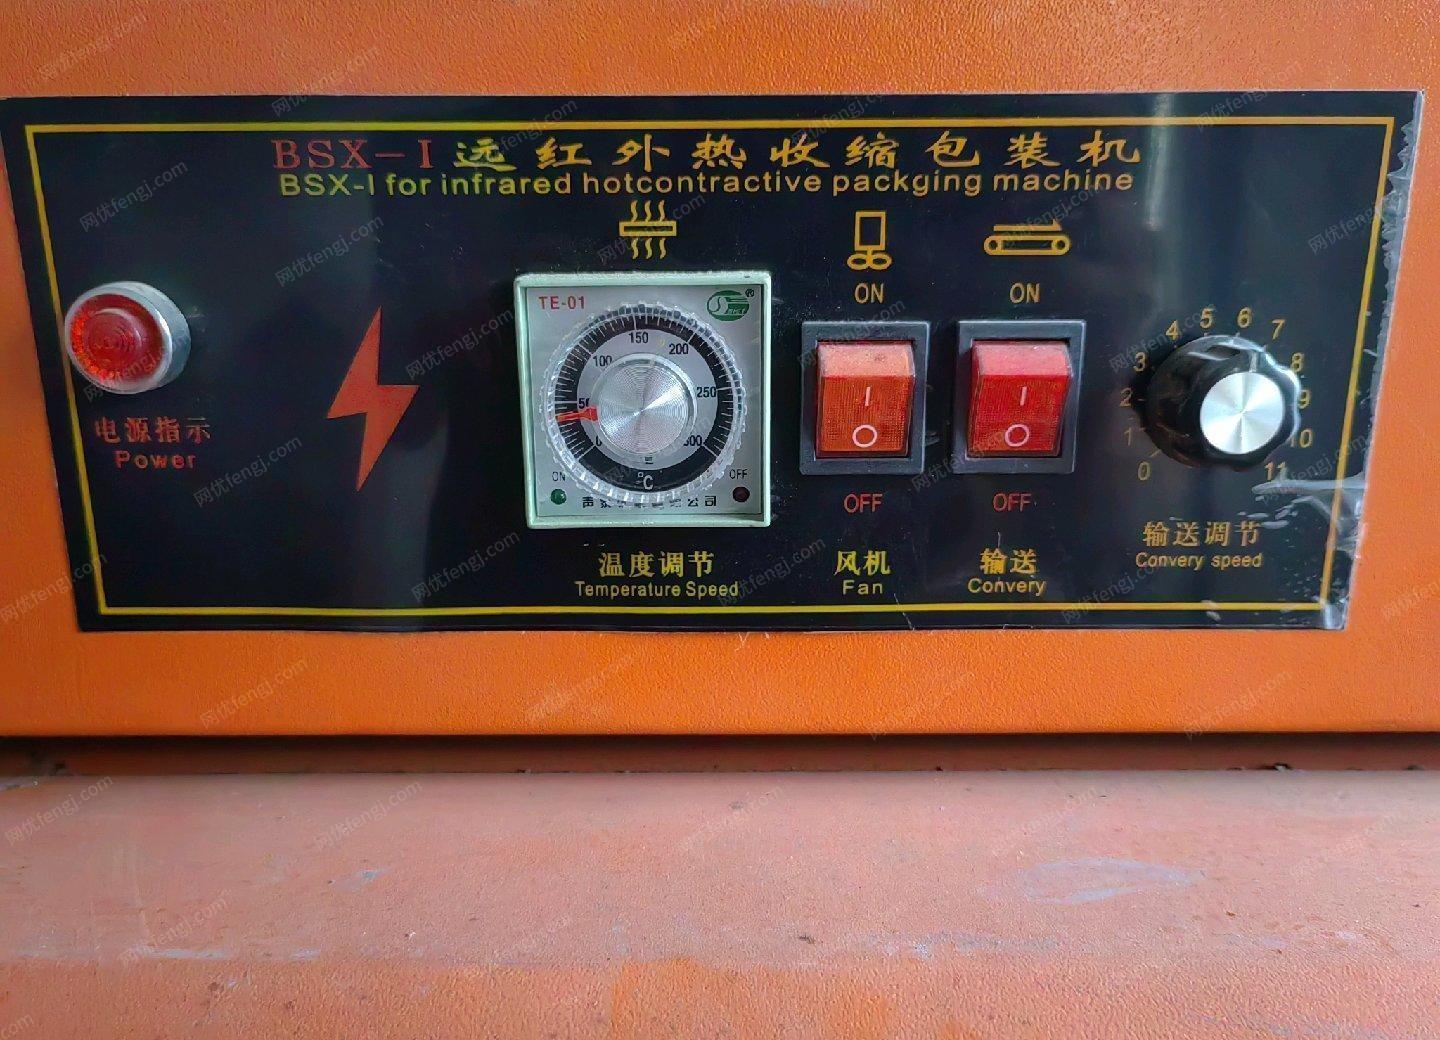 吉林延边朝鲜族自治州远红外热缩包装机出售